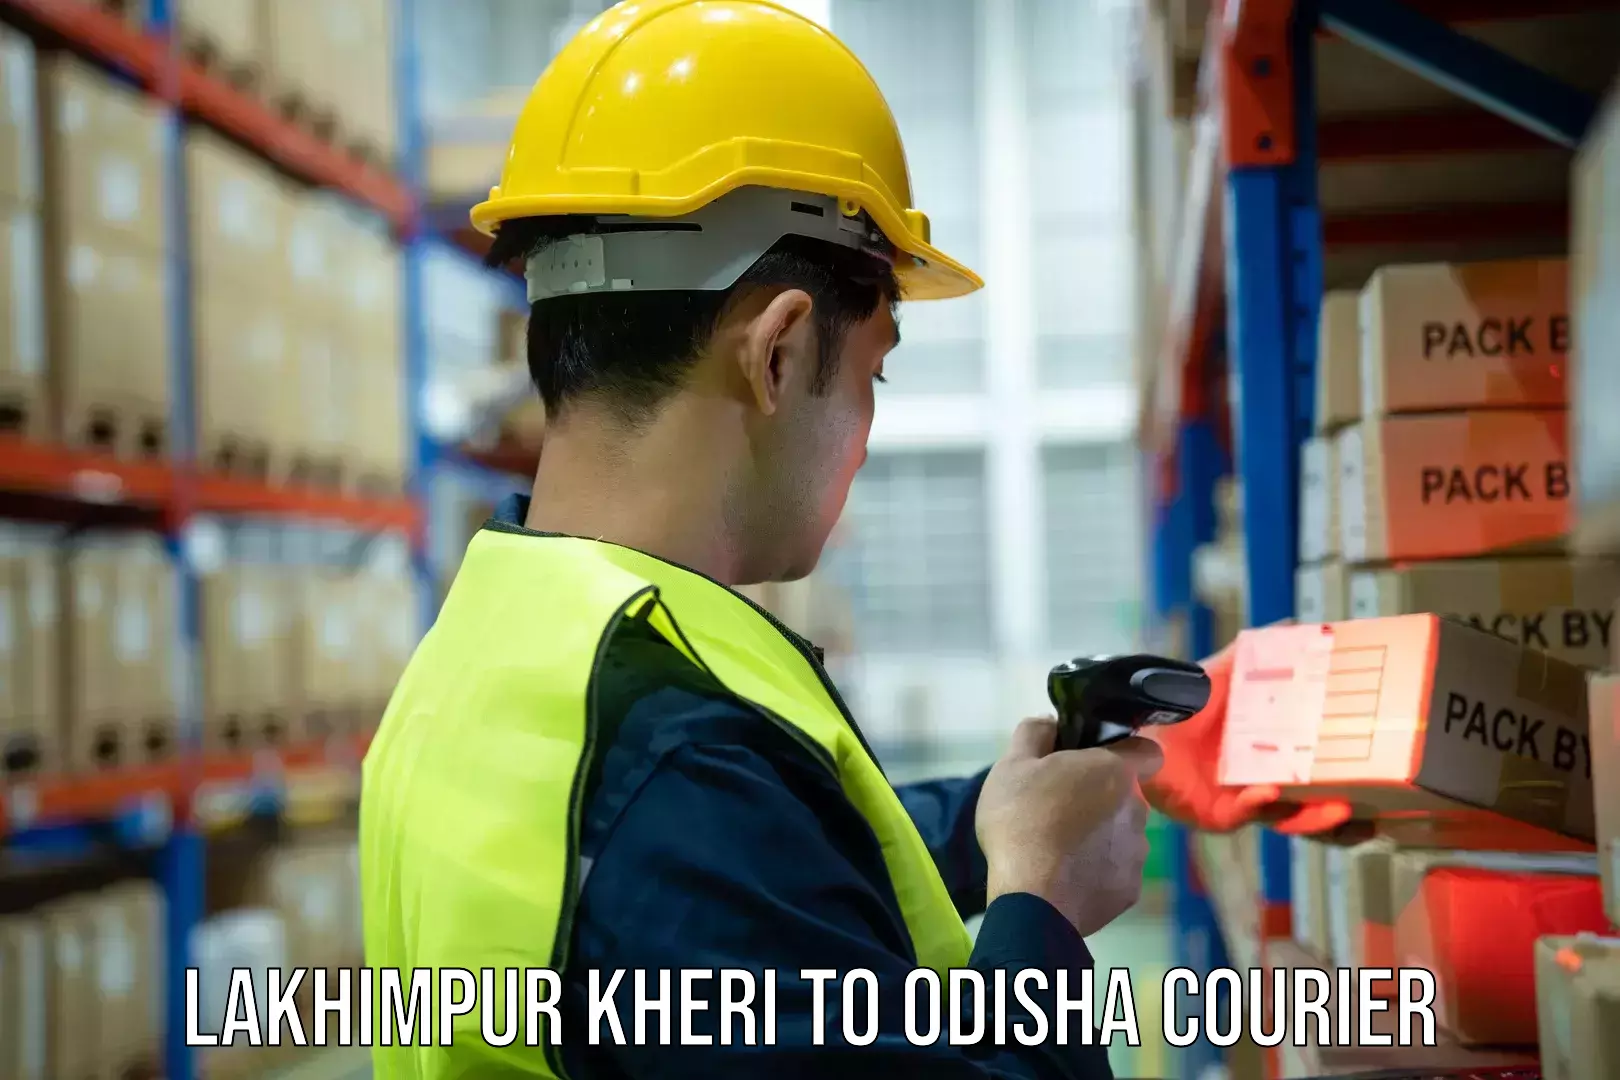 Multi-city courier Lakhimpur Kheri to Odisha